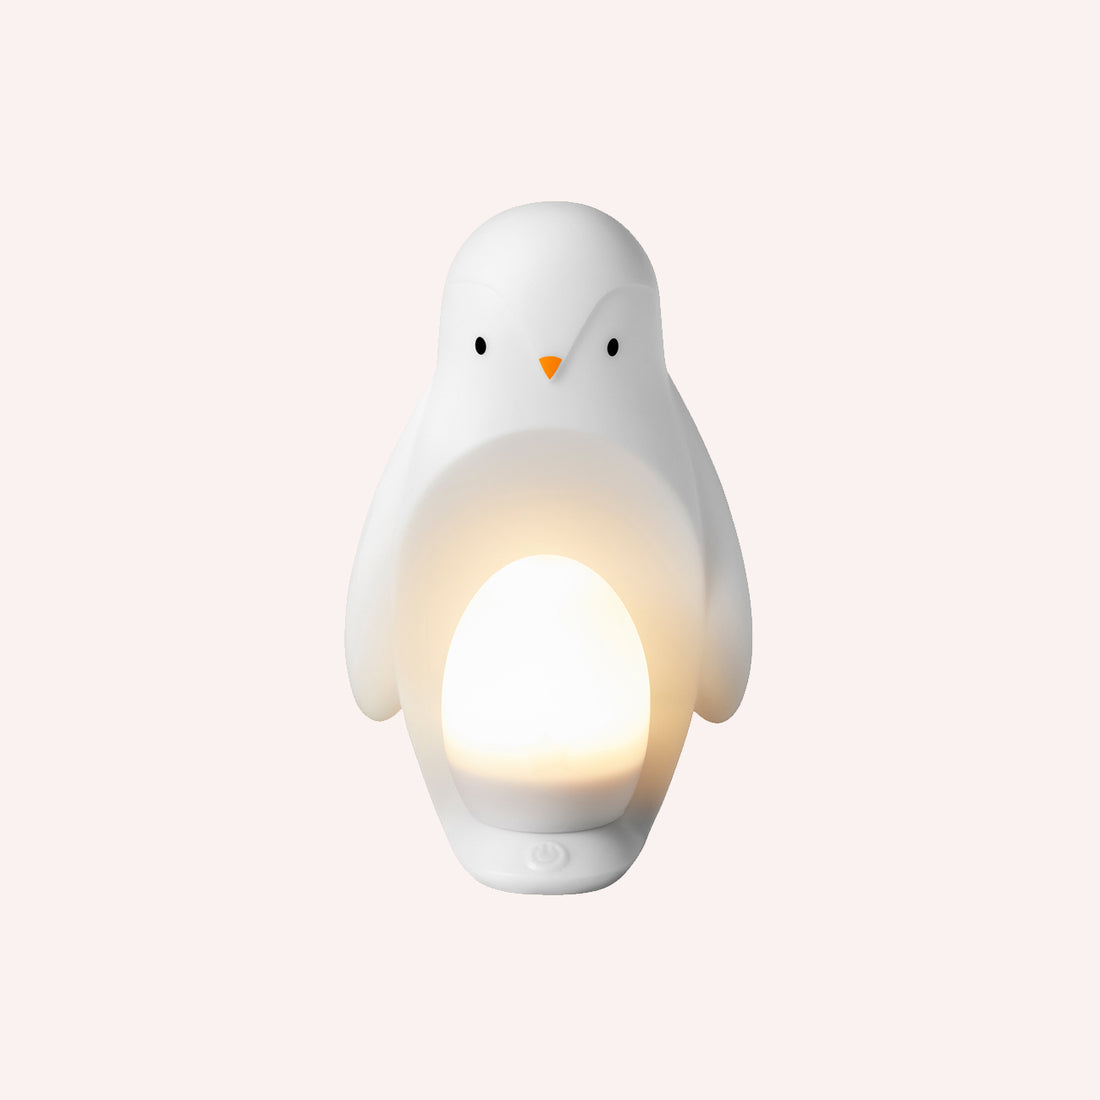 Penguin 2 in 1 Portable Night Light